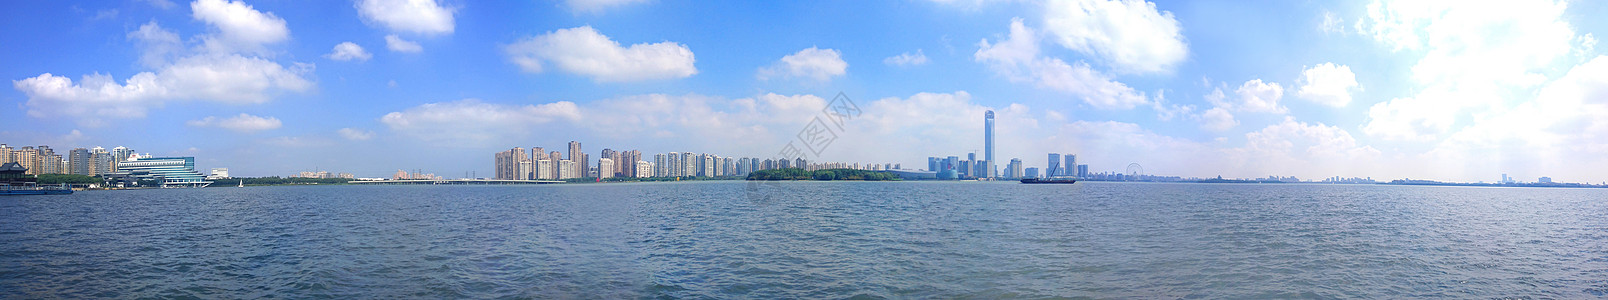 环金鸡湖湖景图片